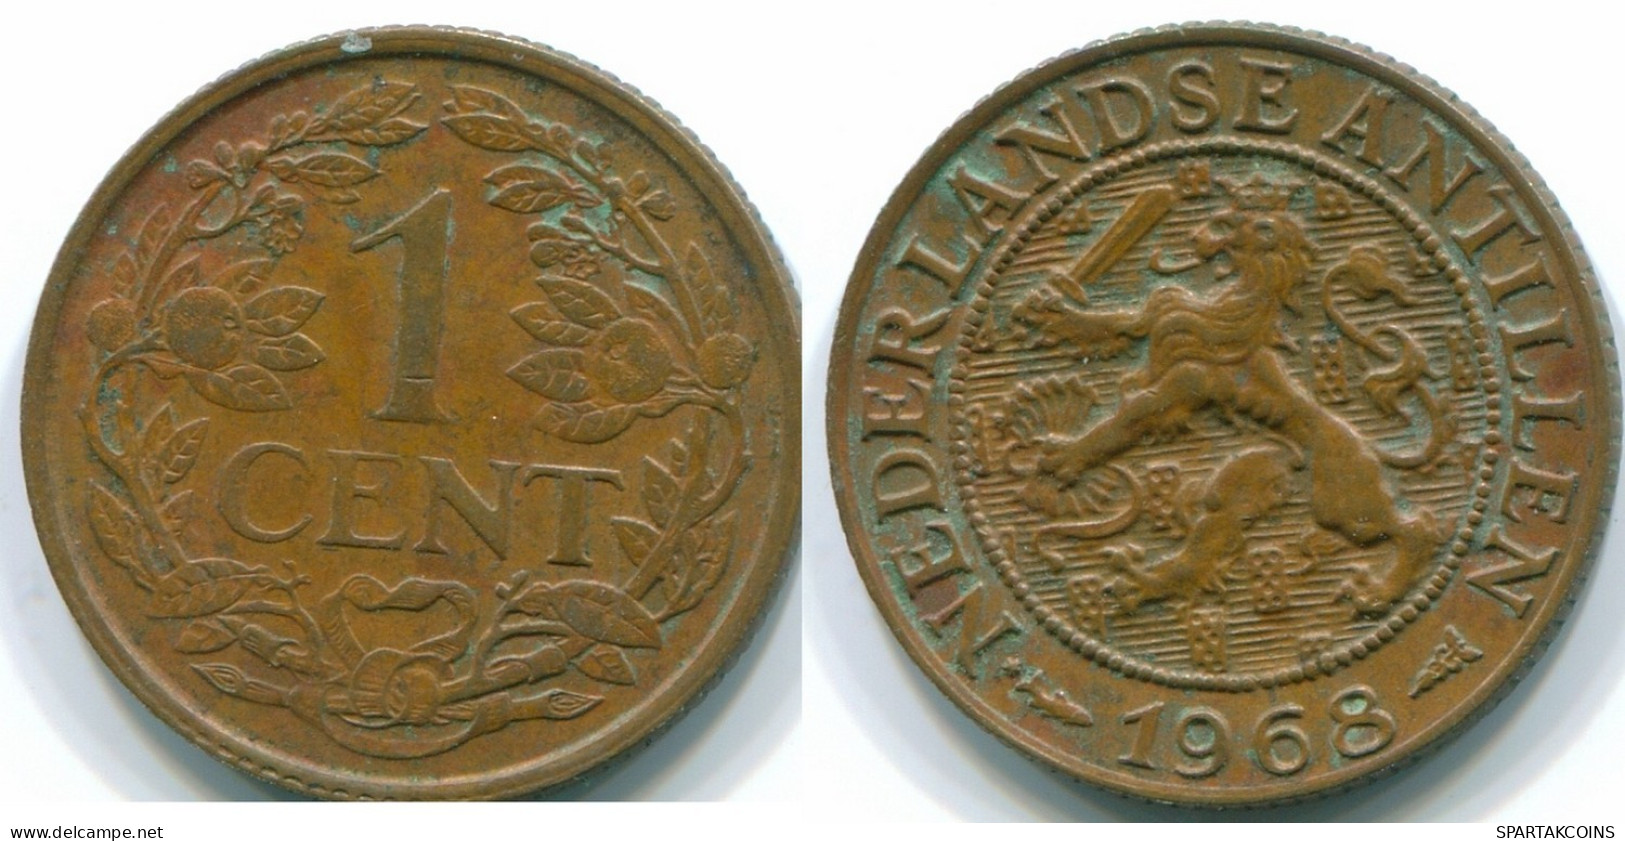 1 CENT 1968 NETHERLANDS ANTILLES Bronze Fish Colonial Coin #S10770.U.A - Antilles Néerlandaises